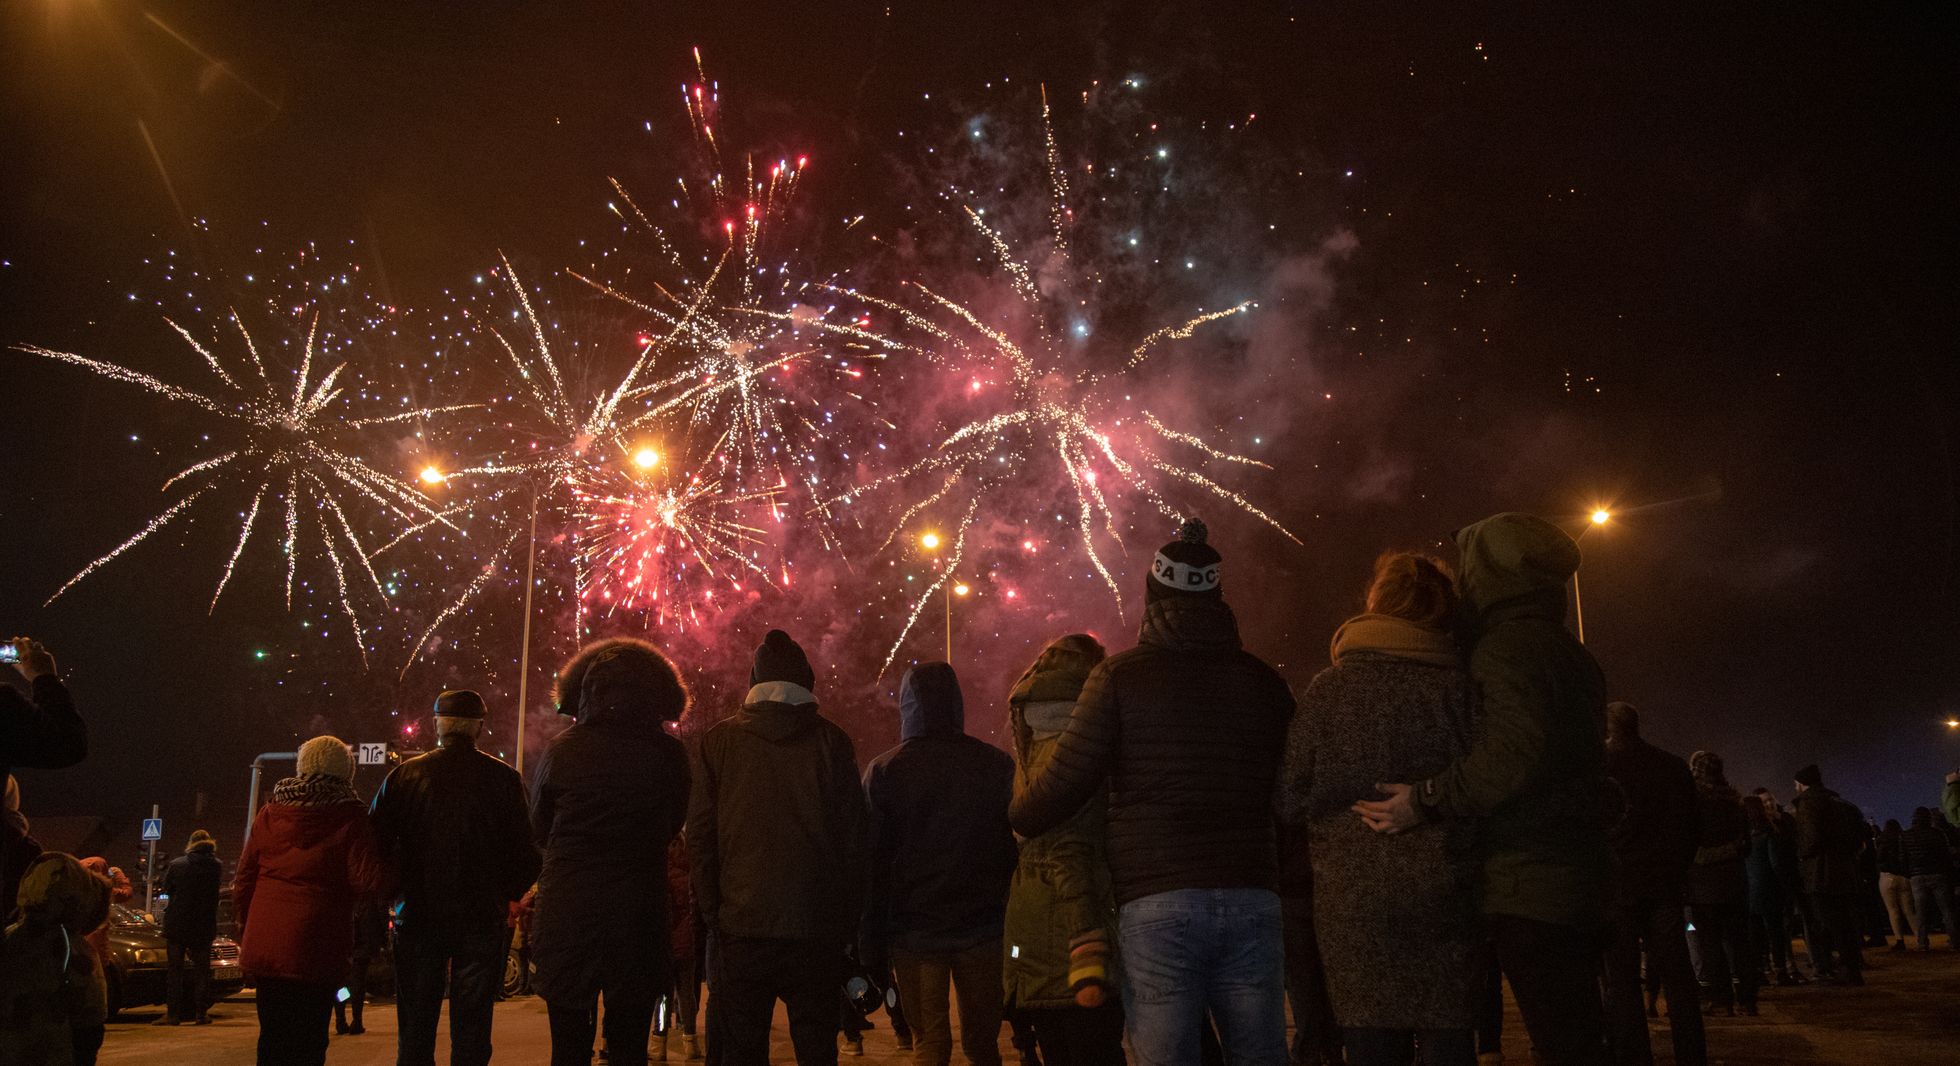 Новогодний фейерверк в Вильянди был одним из самых дорогих в Эстонии: стоил 8000 евро и продолжался семь минут. Горуправа Вильянди выделила на салют 1500 евро, остальные расходы покрыло 31 местное предприятие. 